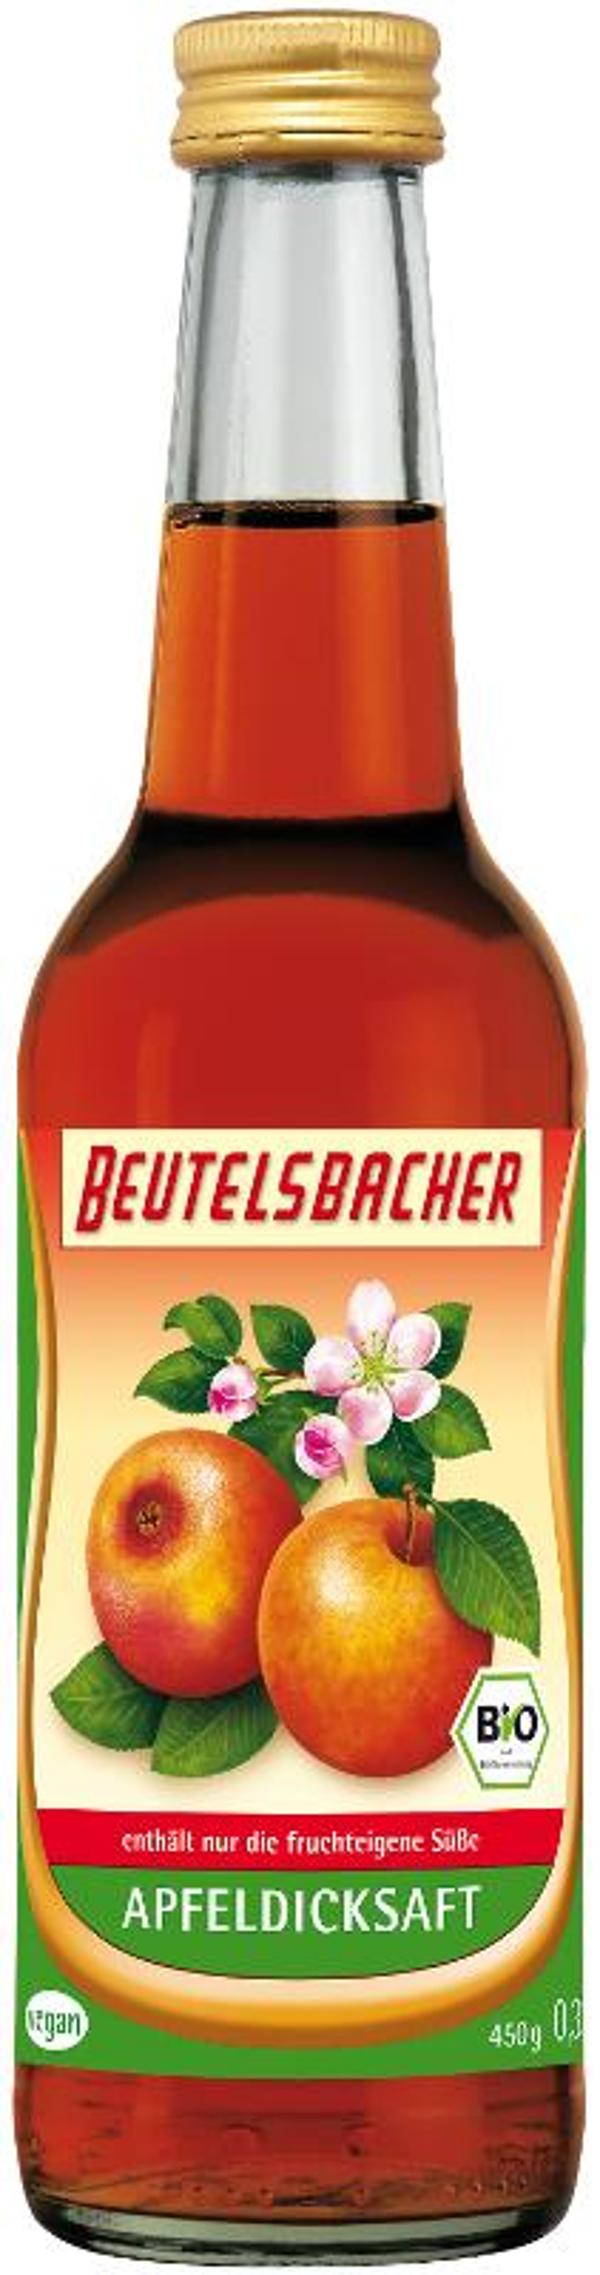 Produktfoto zu Apfeldicksaft von Beutelsbacher